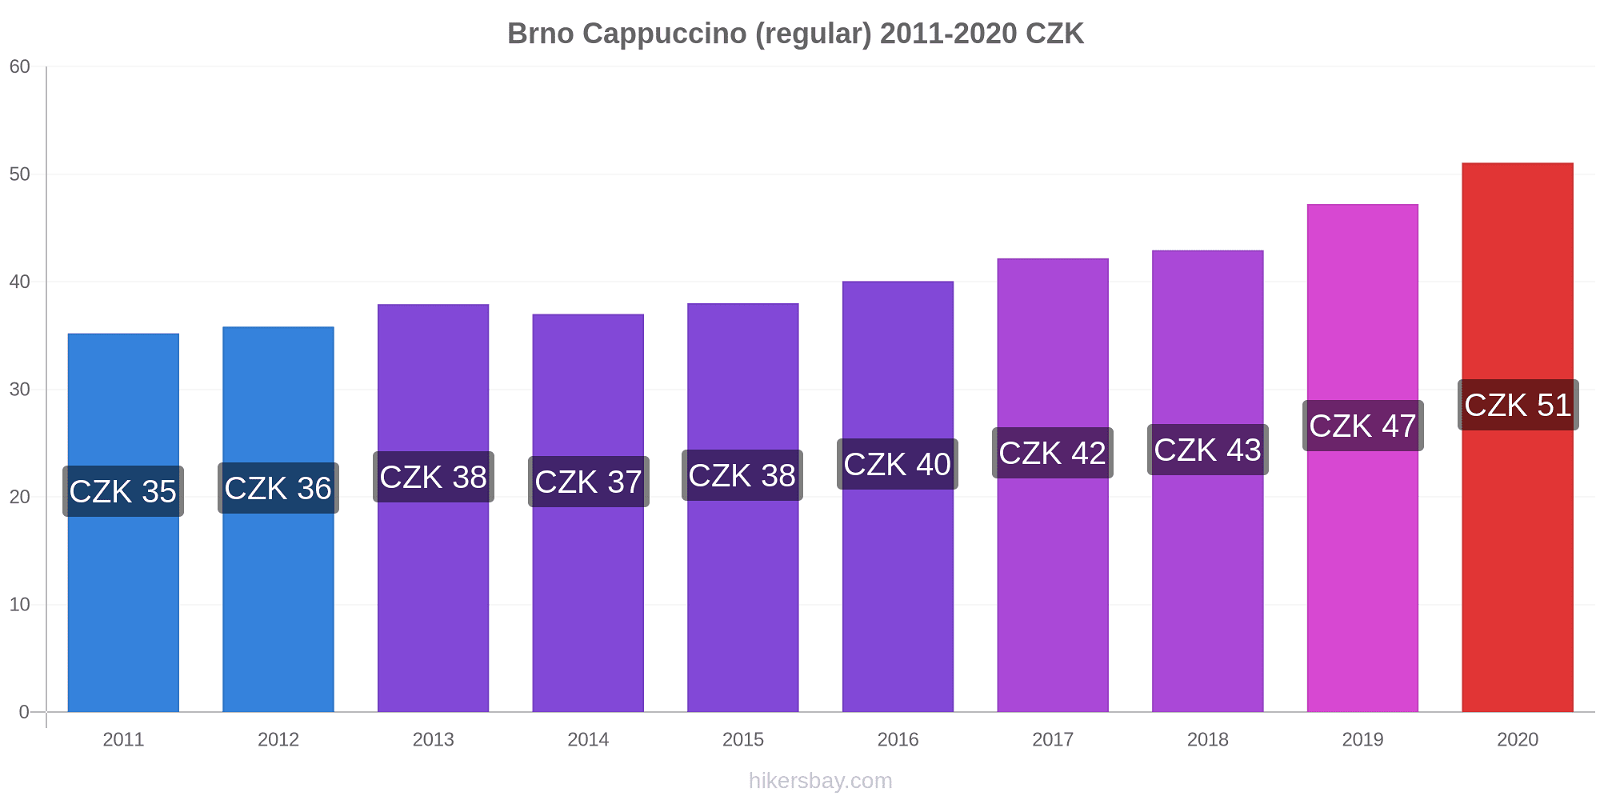 Brno price changes Cappuccino (regular) hikersbay.com